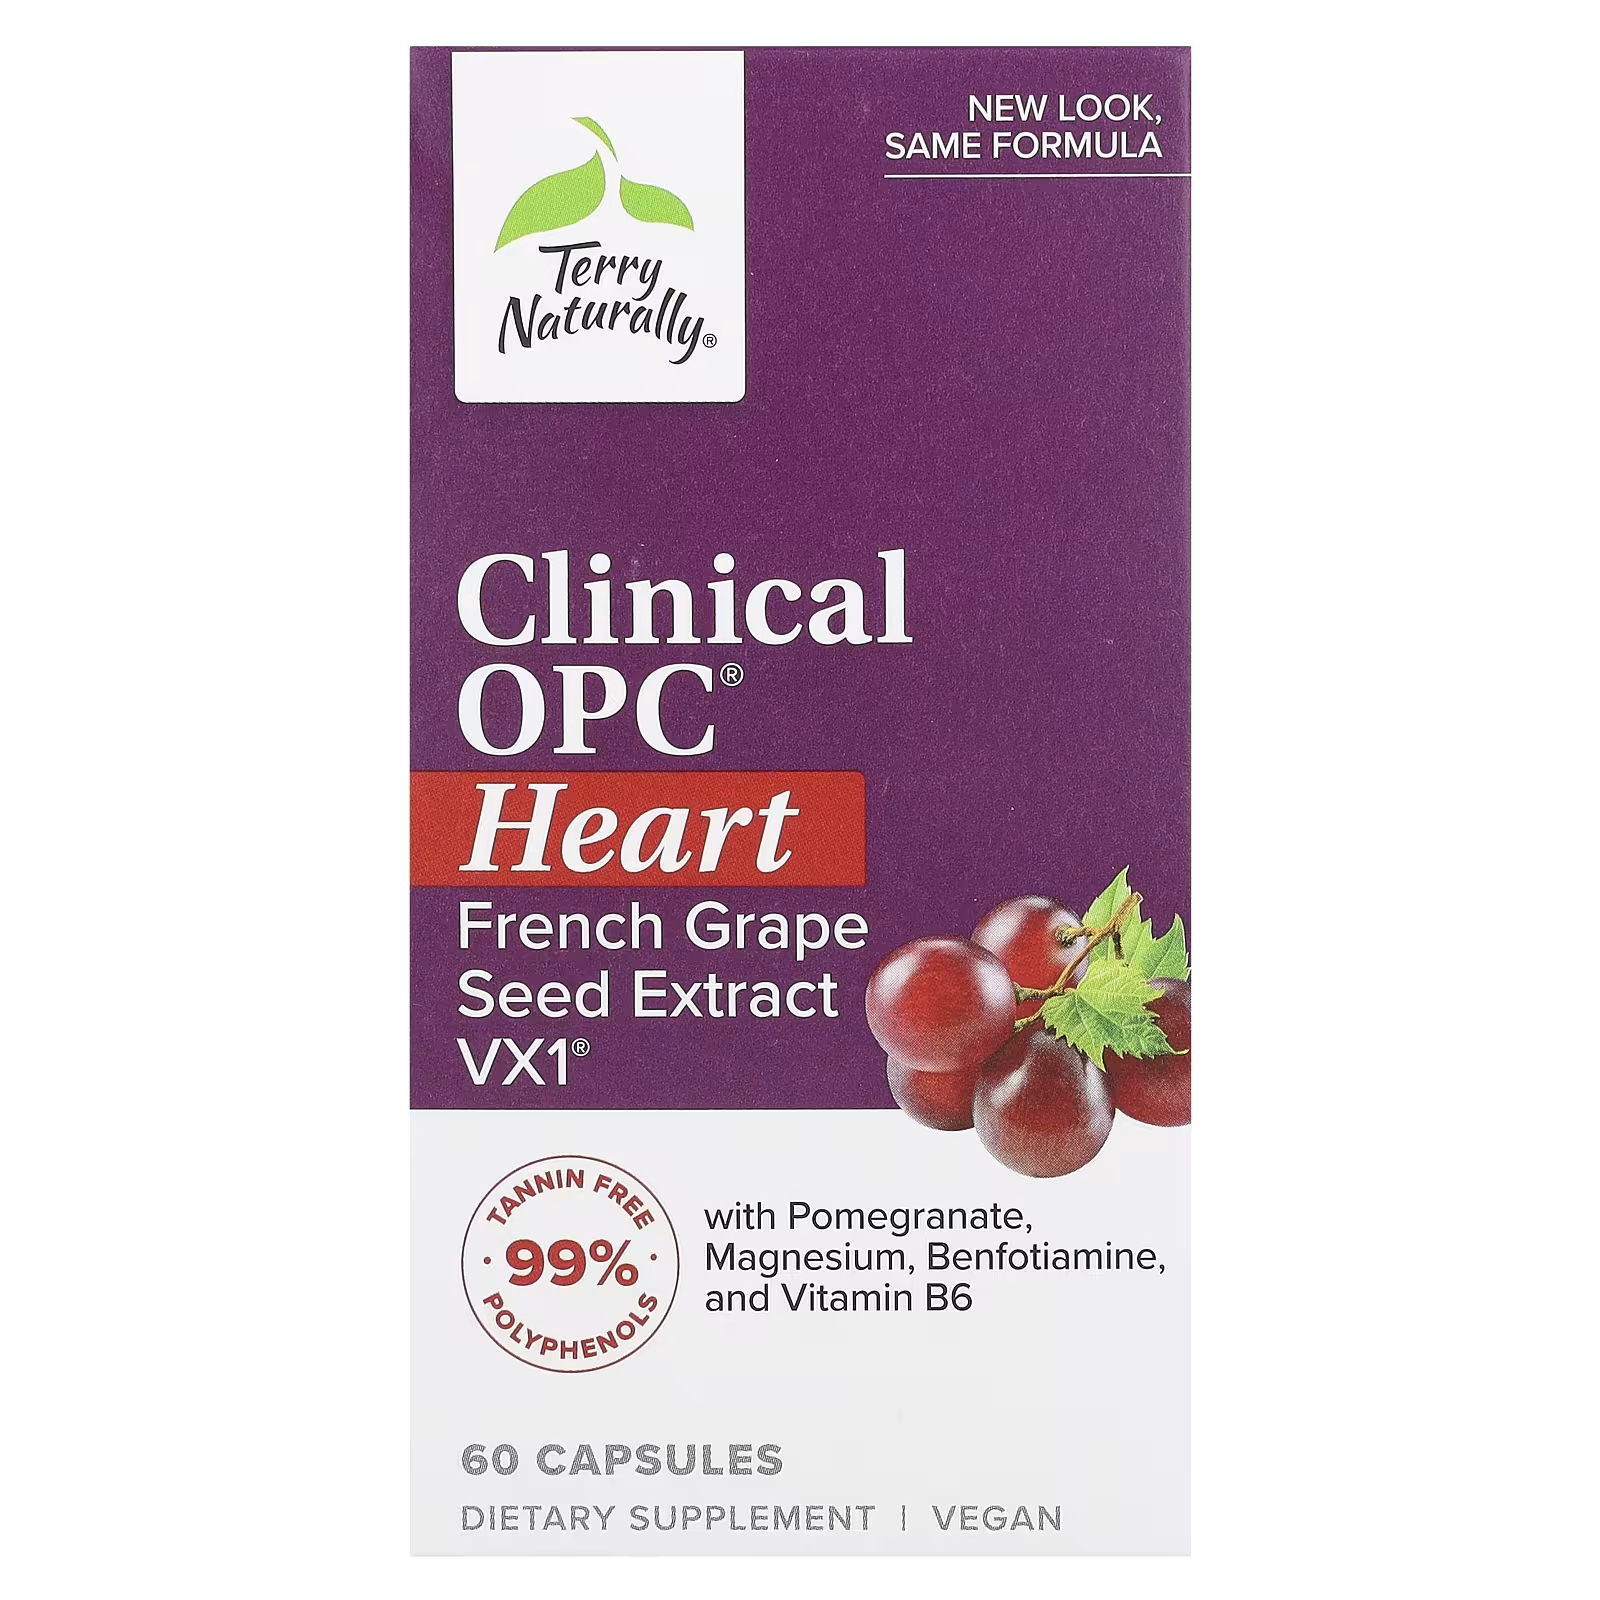 Пищевая добавка Terry Naturally Clinical OPC Heart для сердечно-сосудистой системы, 60 капсул